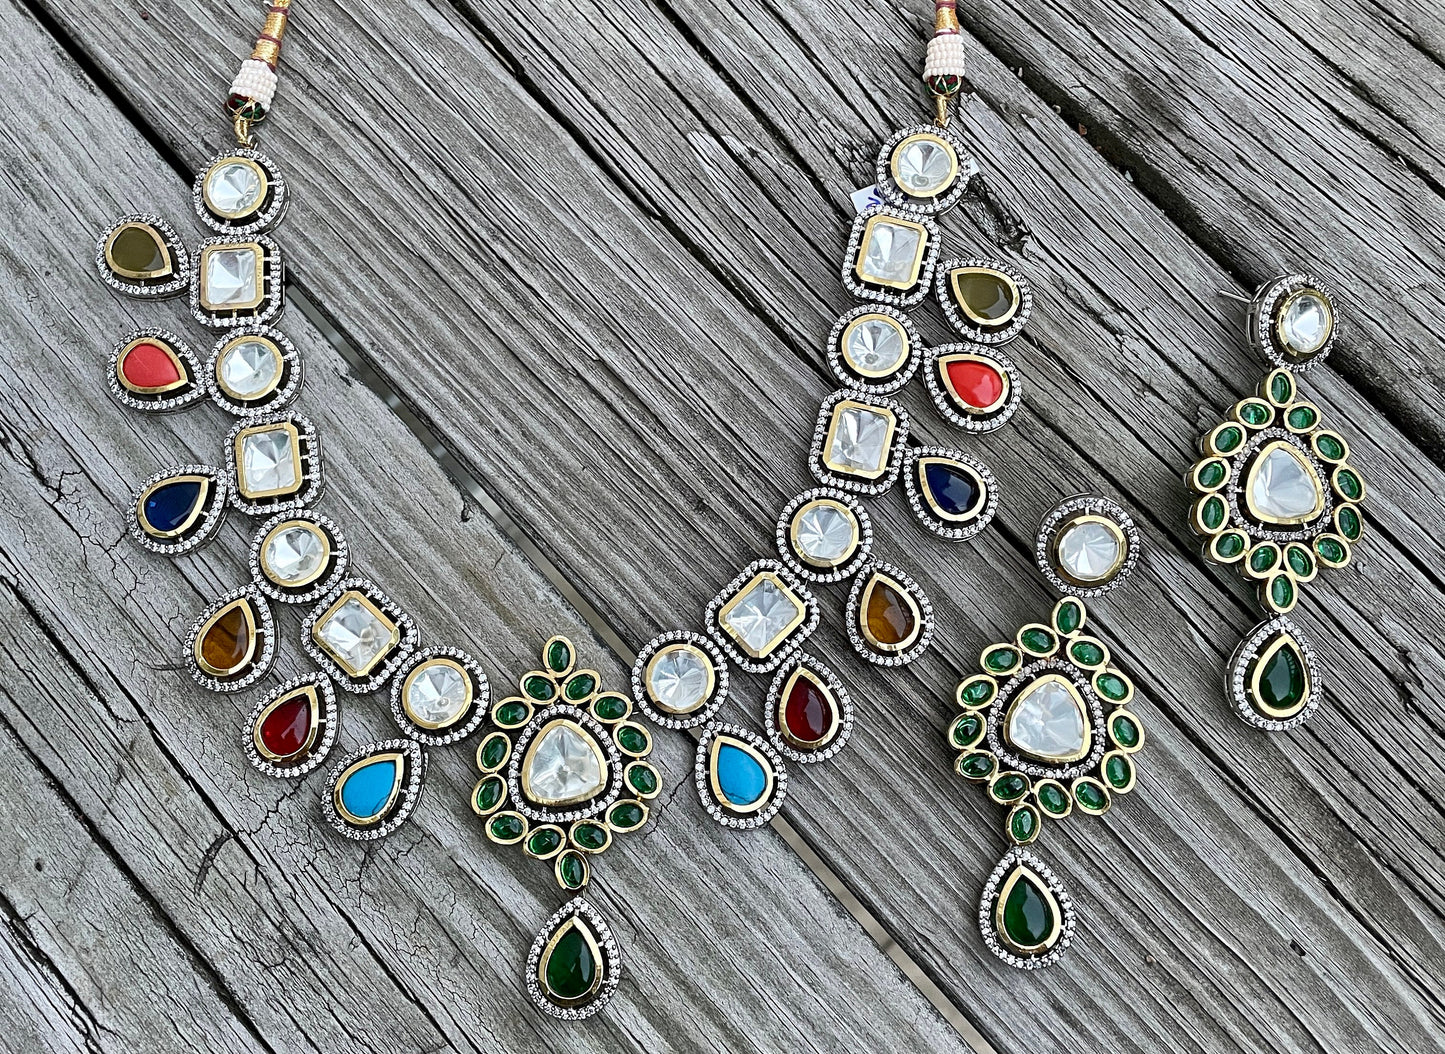 Uncut Polki Jewelry/Semi Precious Necklace Set/Bollywood Jewelry/Nikah Valima jewelry/Silver Indian choker/Indian Wedding Jewelry/Polki Set